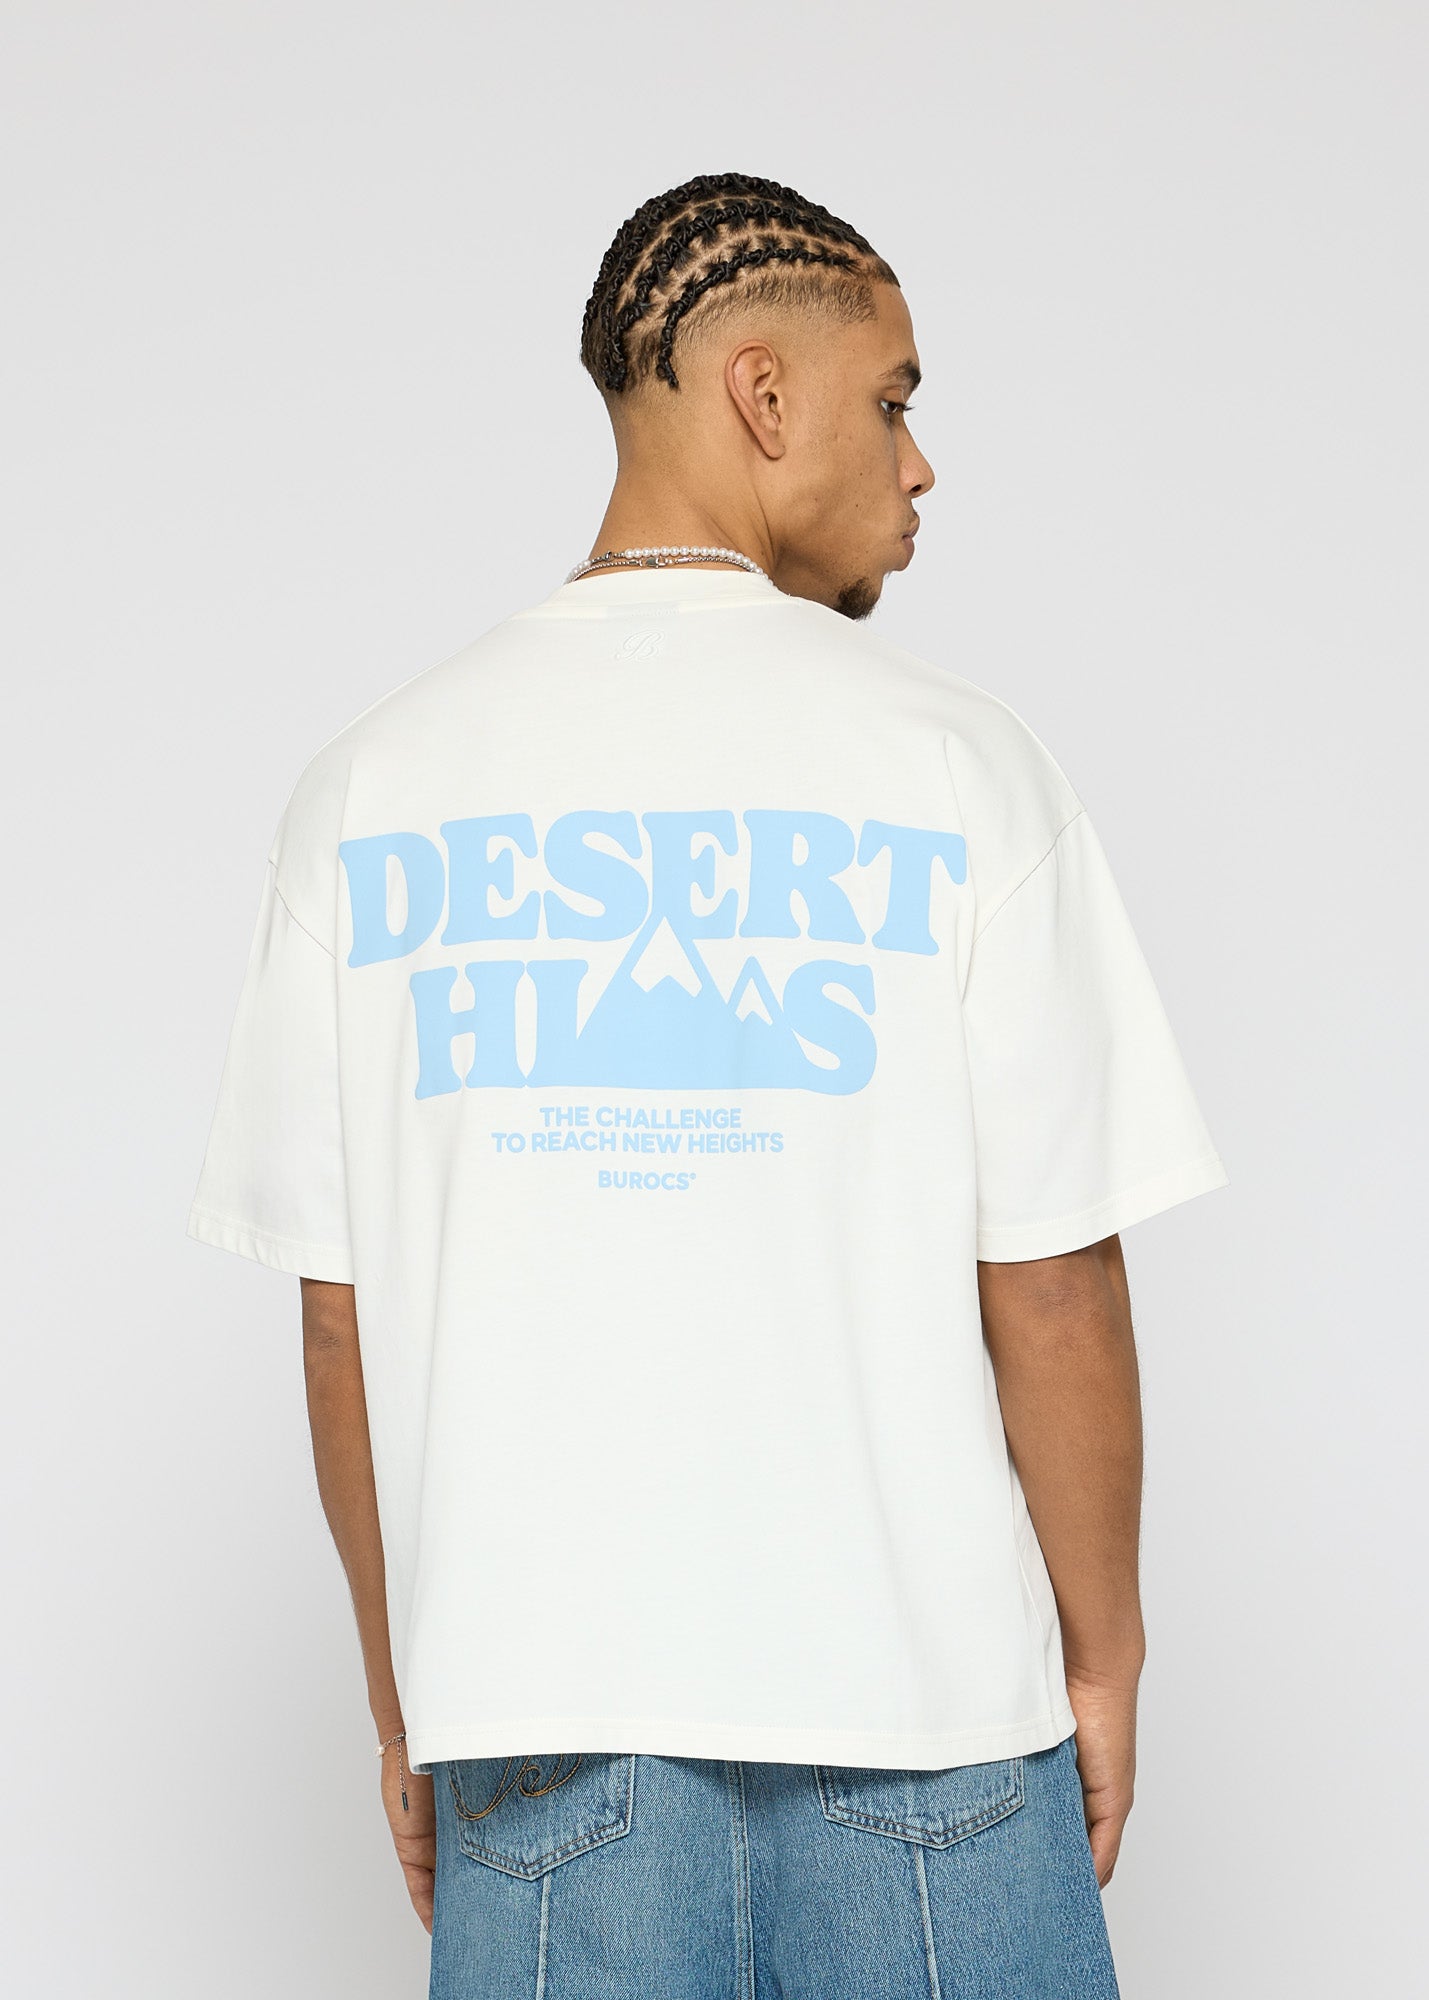 Hills T-Shirt